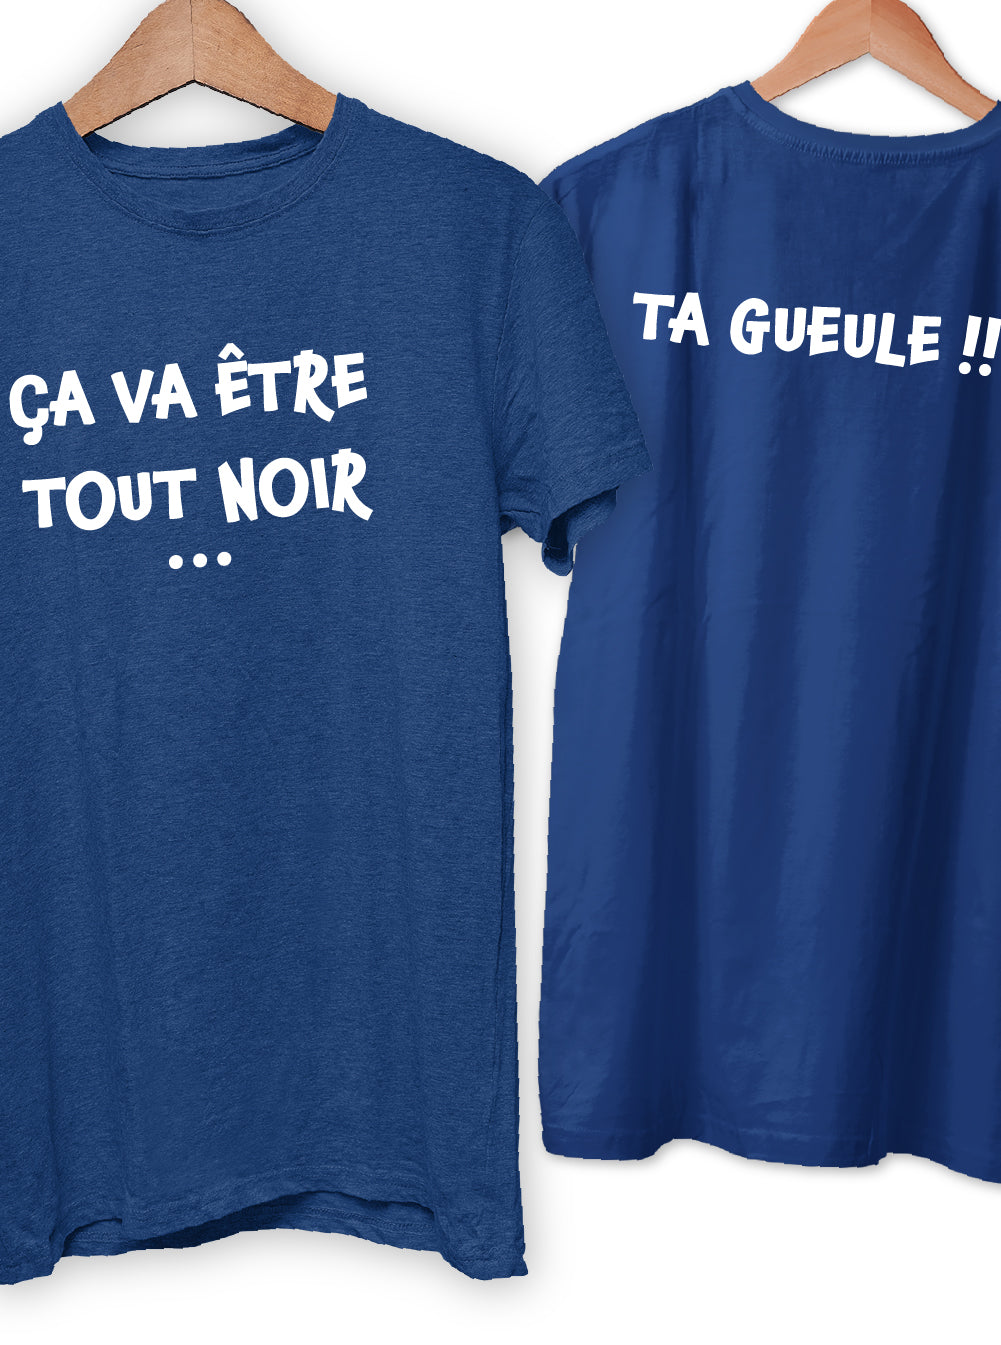 T-Shirt "ÇA VA ÊTRE TOUT NOIR ... TA GUEULE !!"